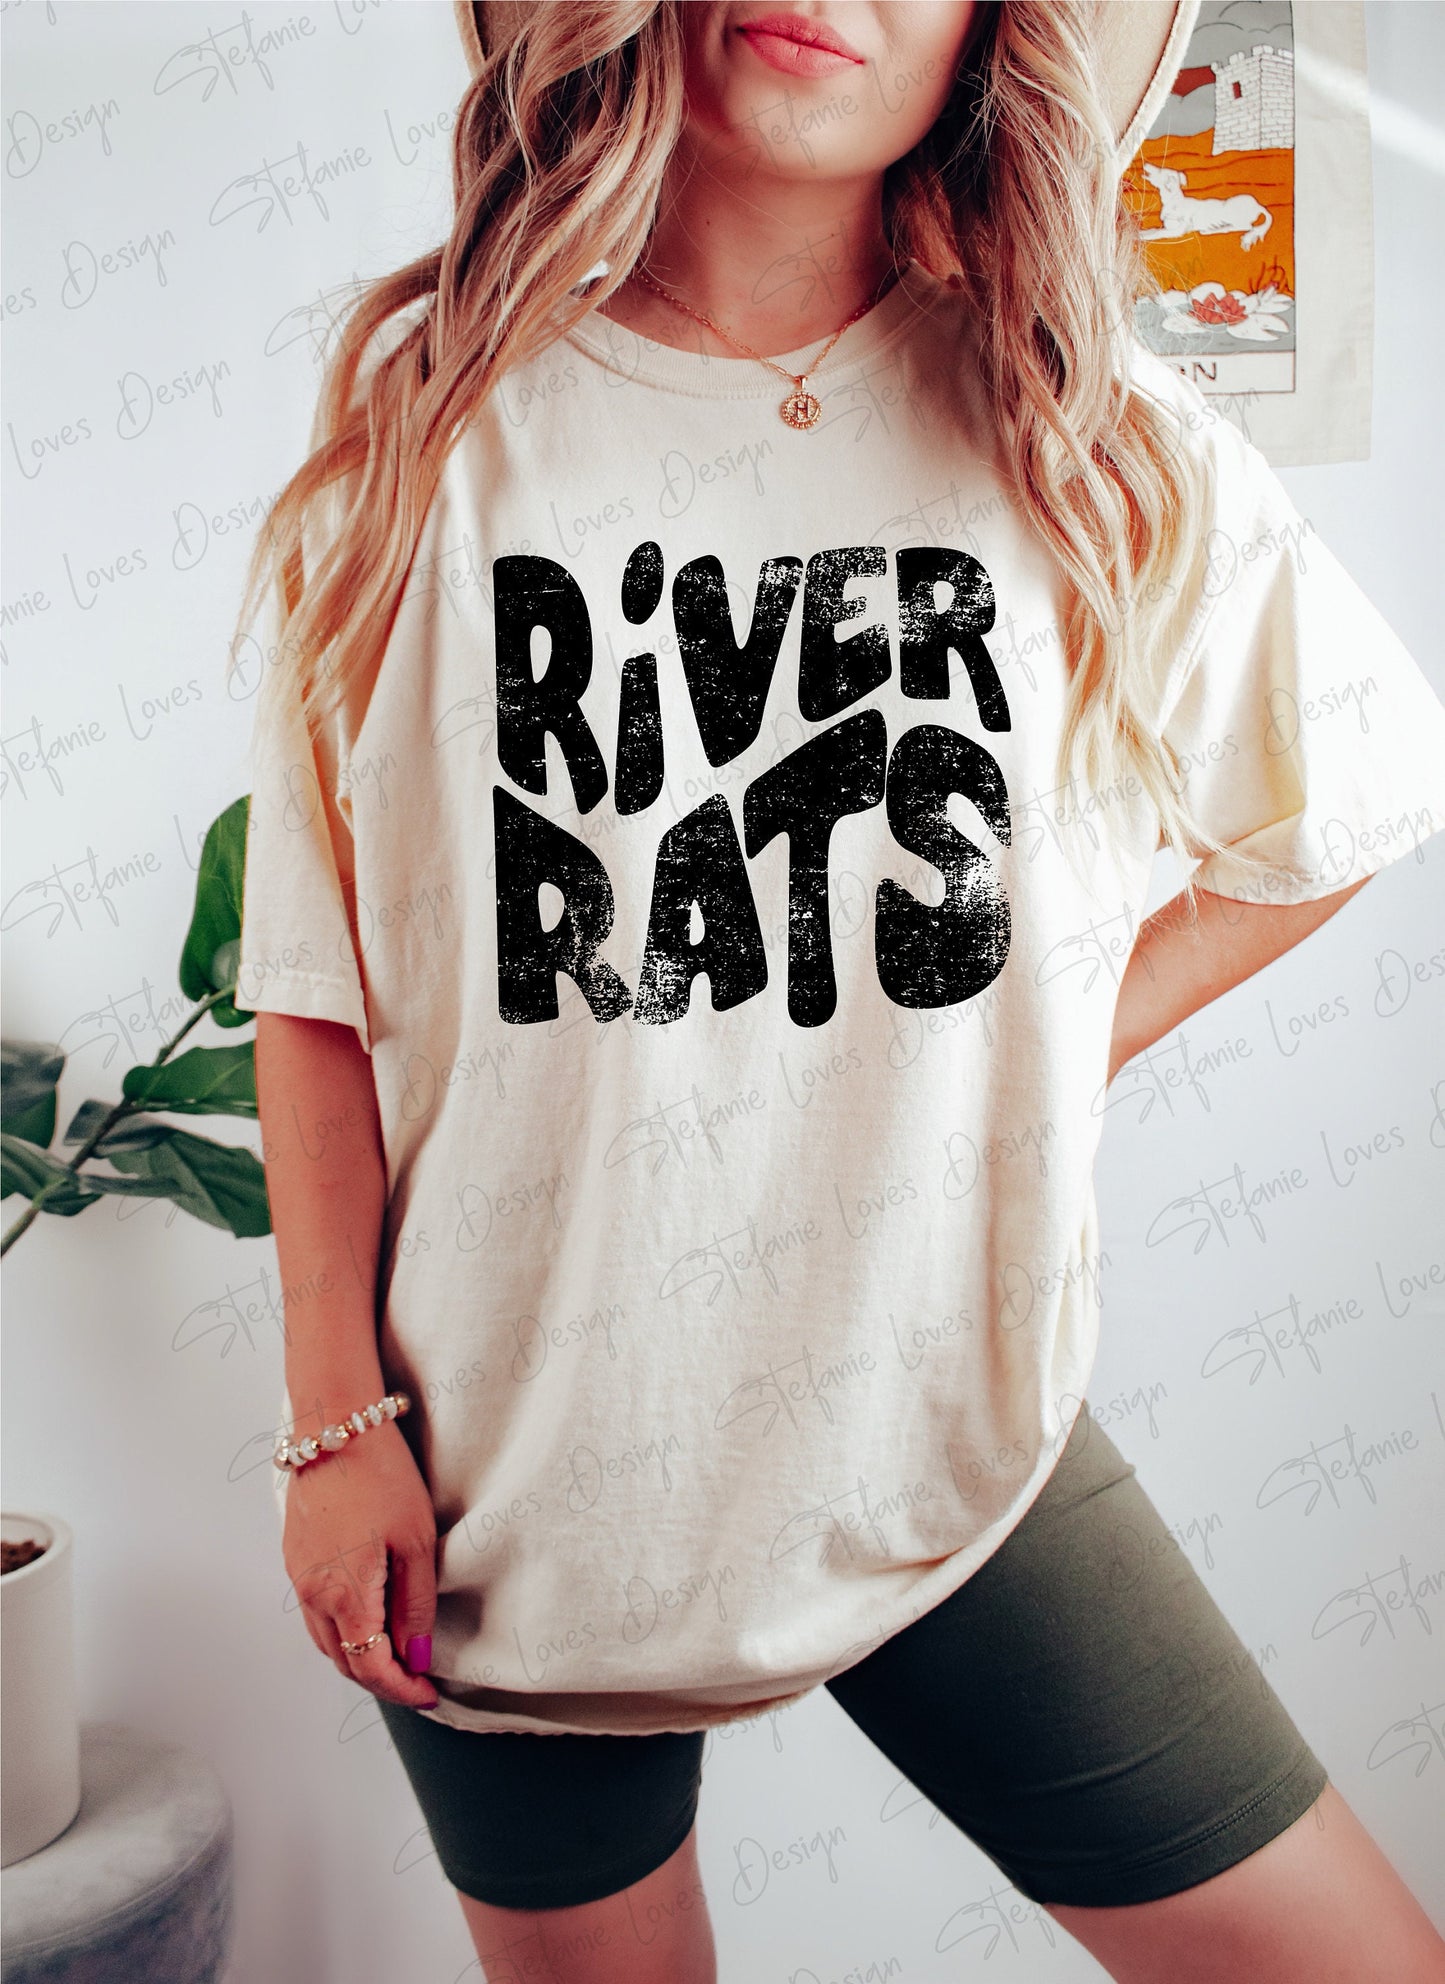 River Rats png, Distressed River Rats Mascot png, Digital Design, River Rats High School